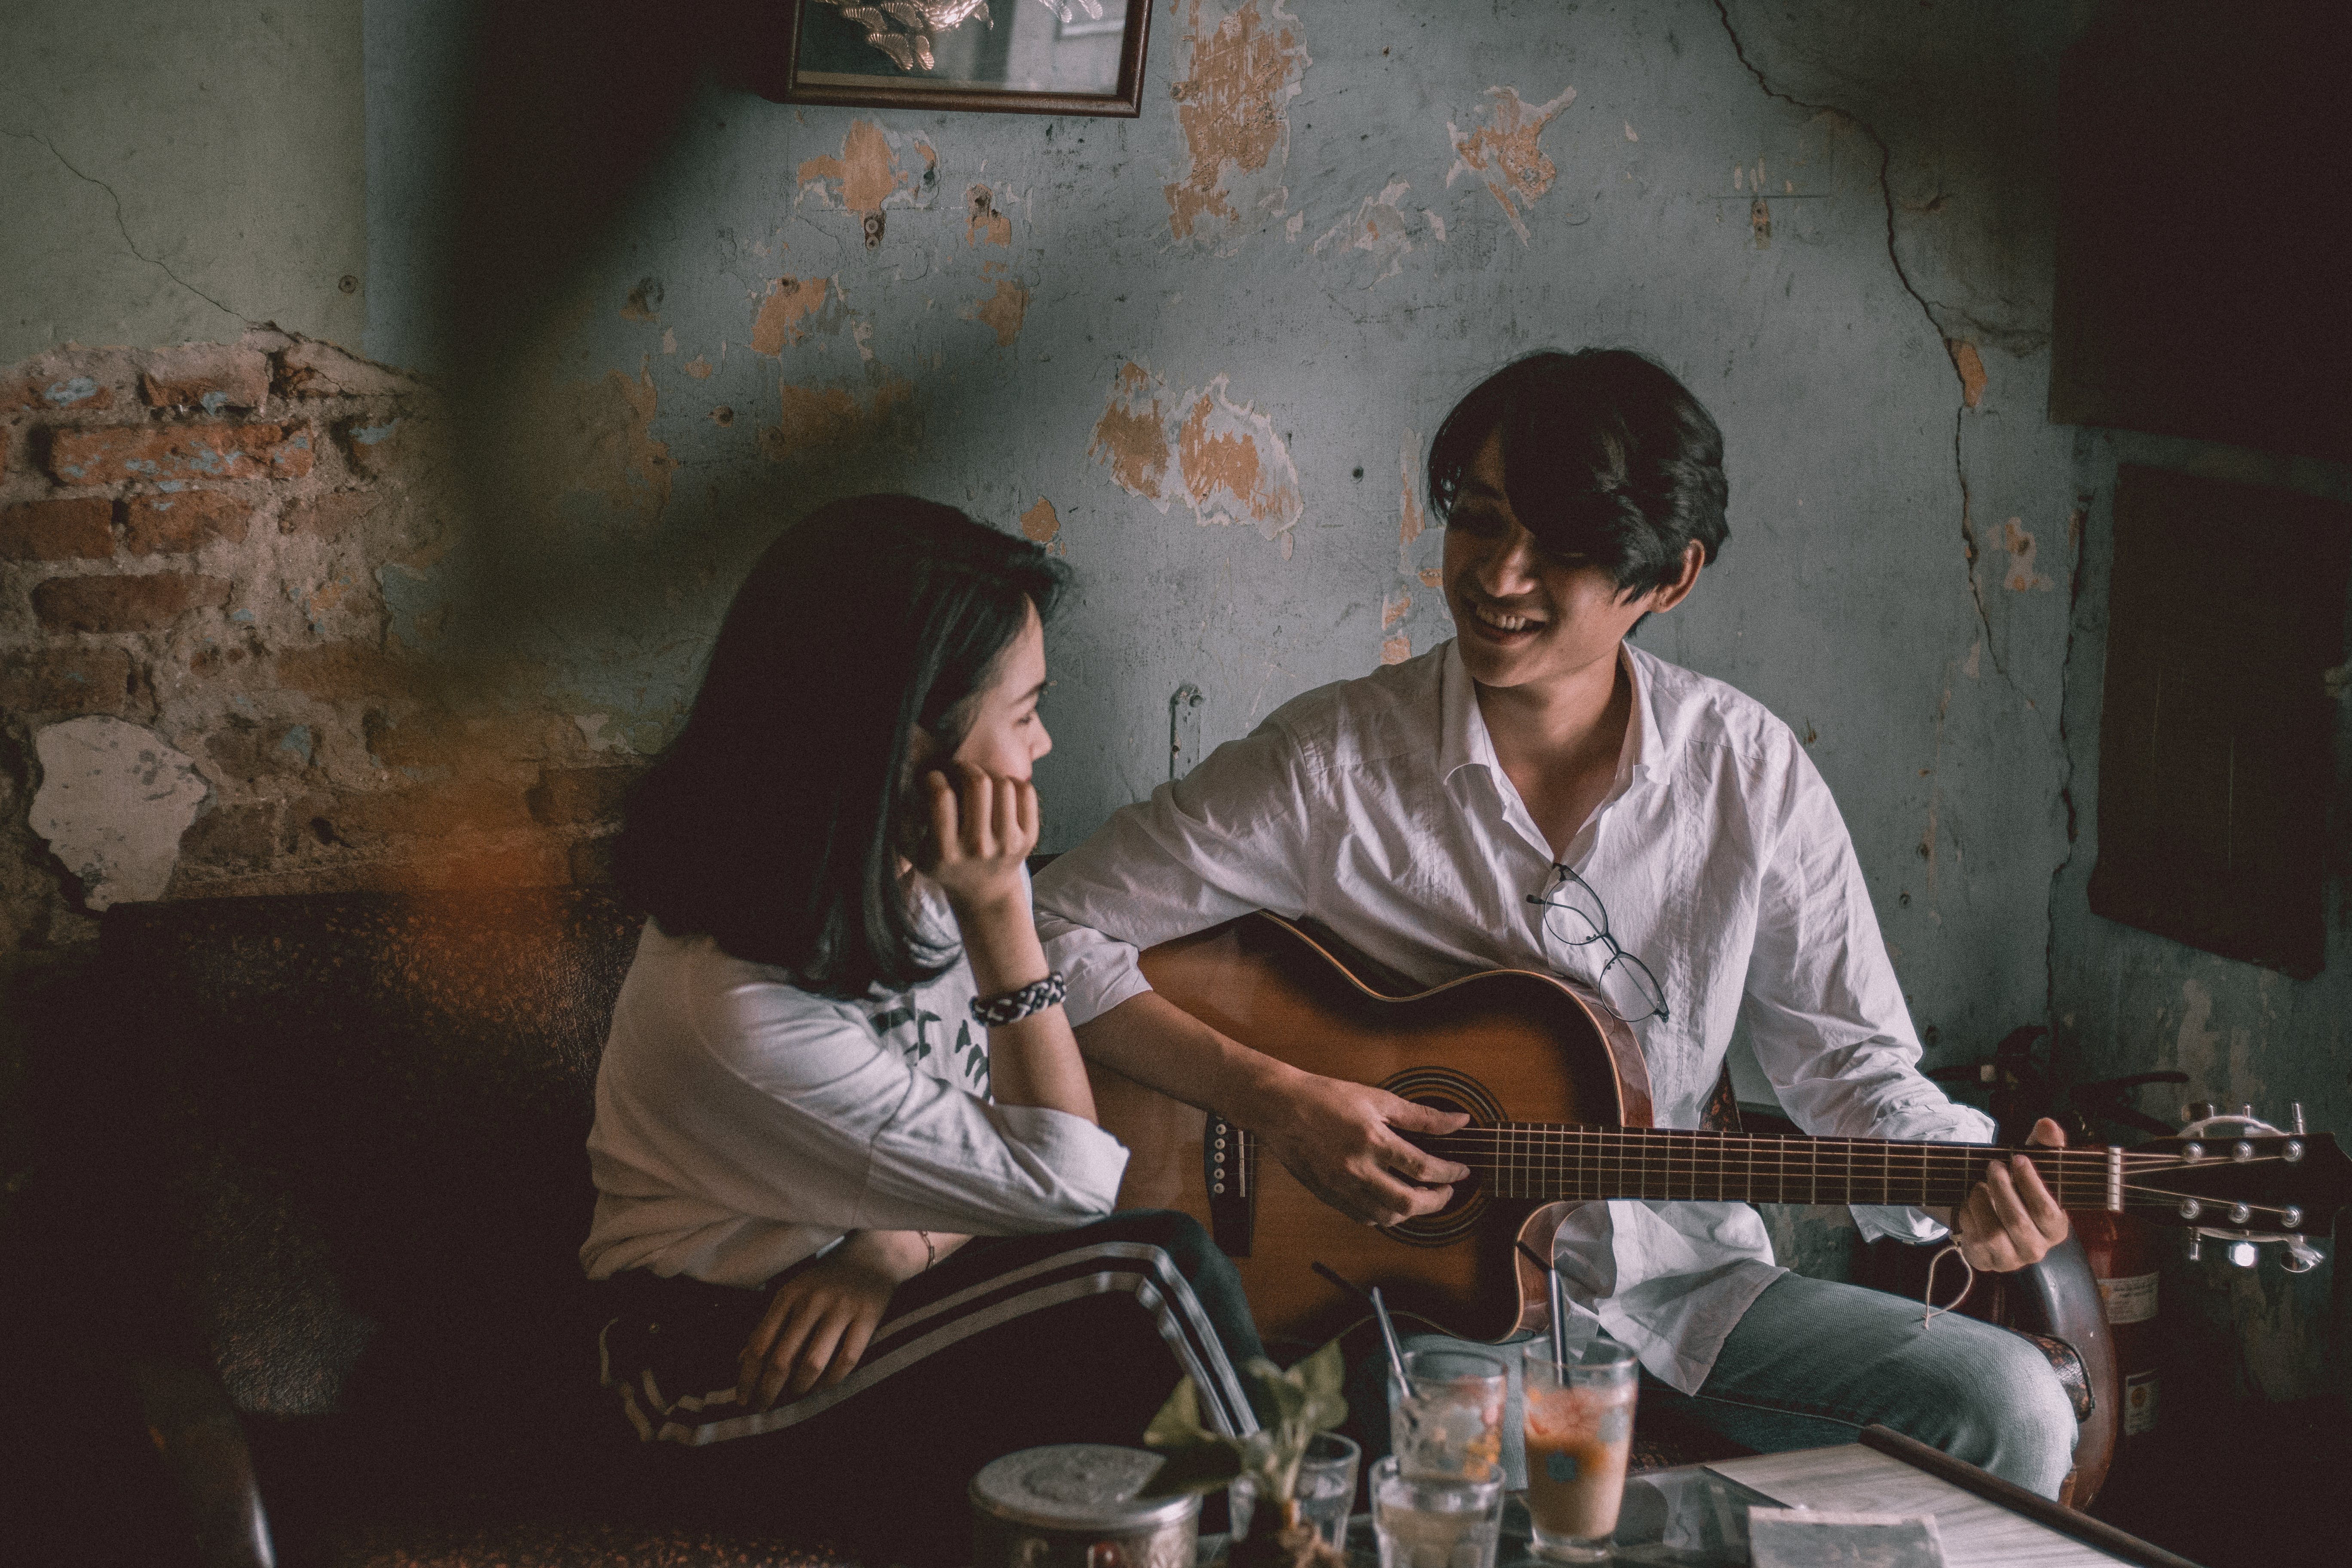 Photo de Mẫnn Quang: https://www.pexels.com/fr-fr/photo/homme-jouant-de-la-guitare-avec-une-fille-3450887/